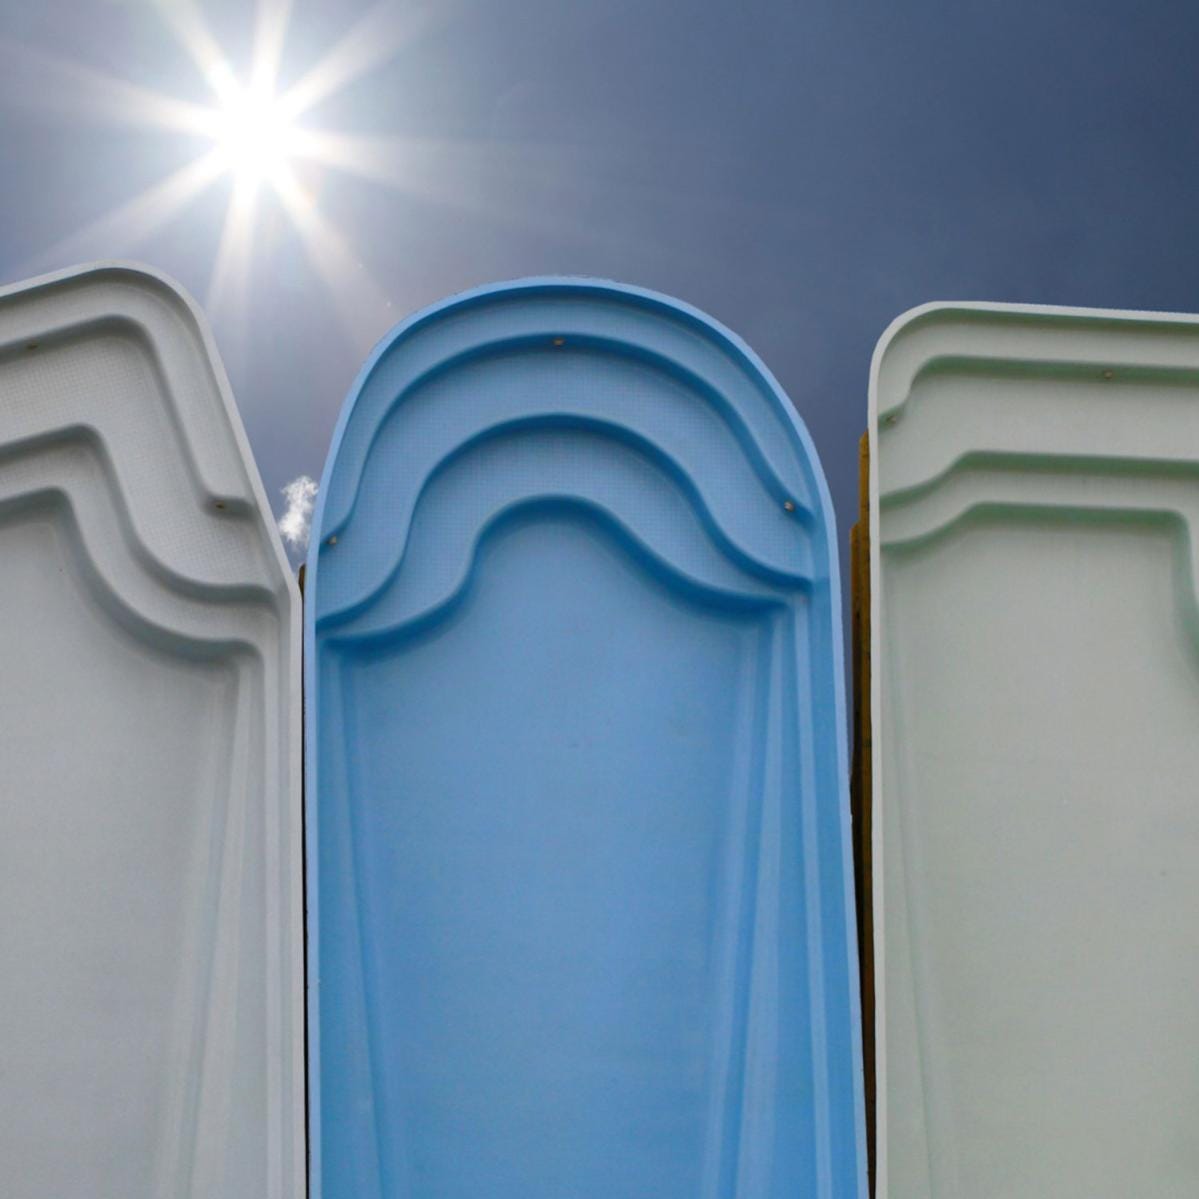 Peinture Piscine pour coque polyester - 20 kg (jusqu'à 65m² en 2 couches) - Bleu Clair - ARCANE INDUSTRIES 7